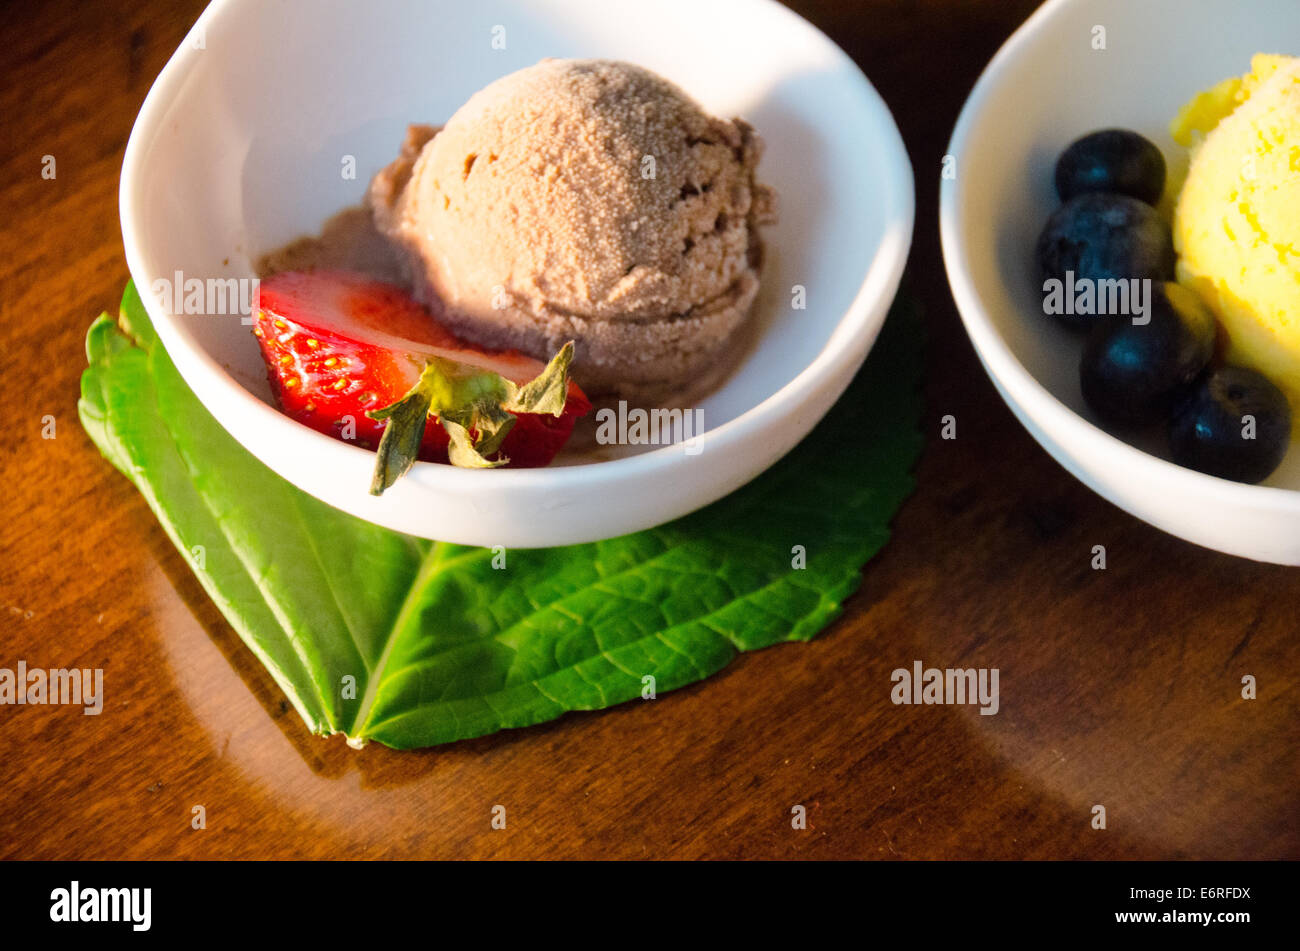 Bol de chocolat ou sorbet gelato avec fraise, à côté d'un bol de glace ou sorbet au citron avec des bleuets Banque D'Images